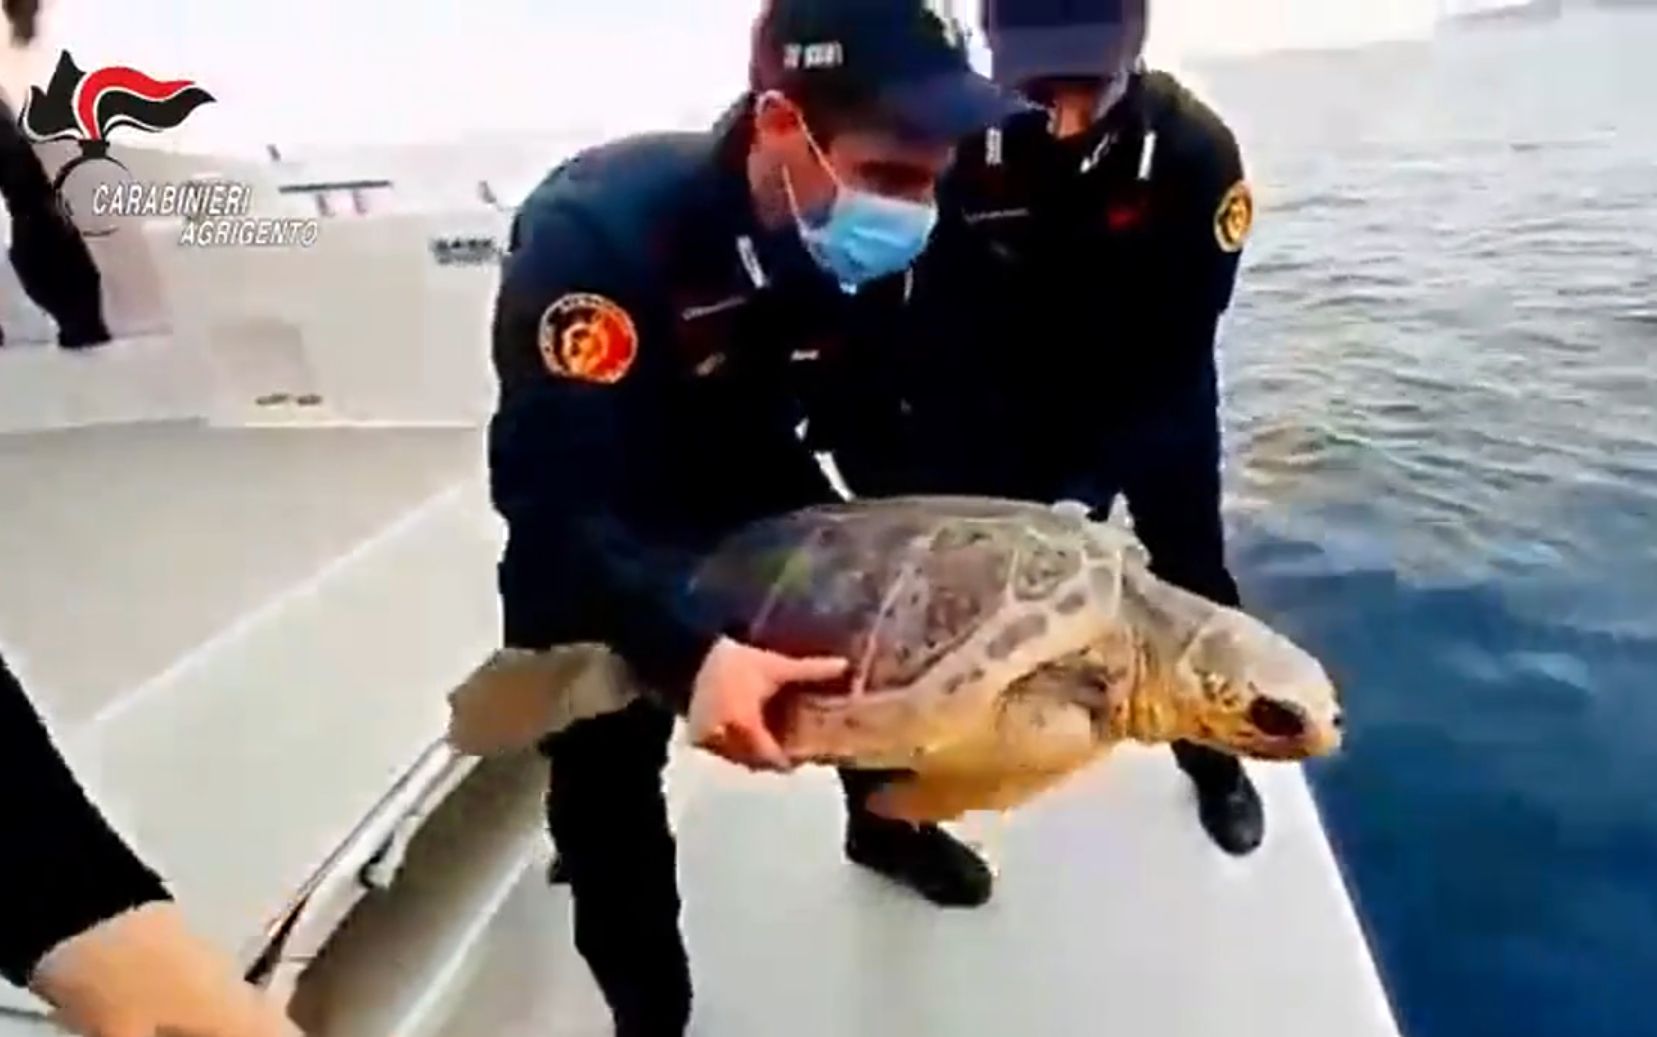 Carabinieri restituiscono al mare di Lampedusa tartaruga marina “Fiamma”